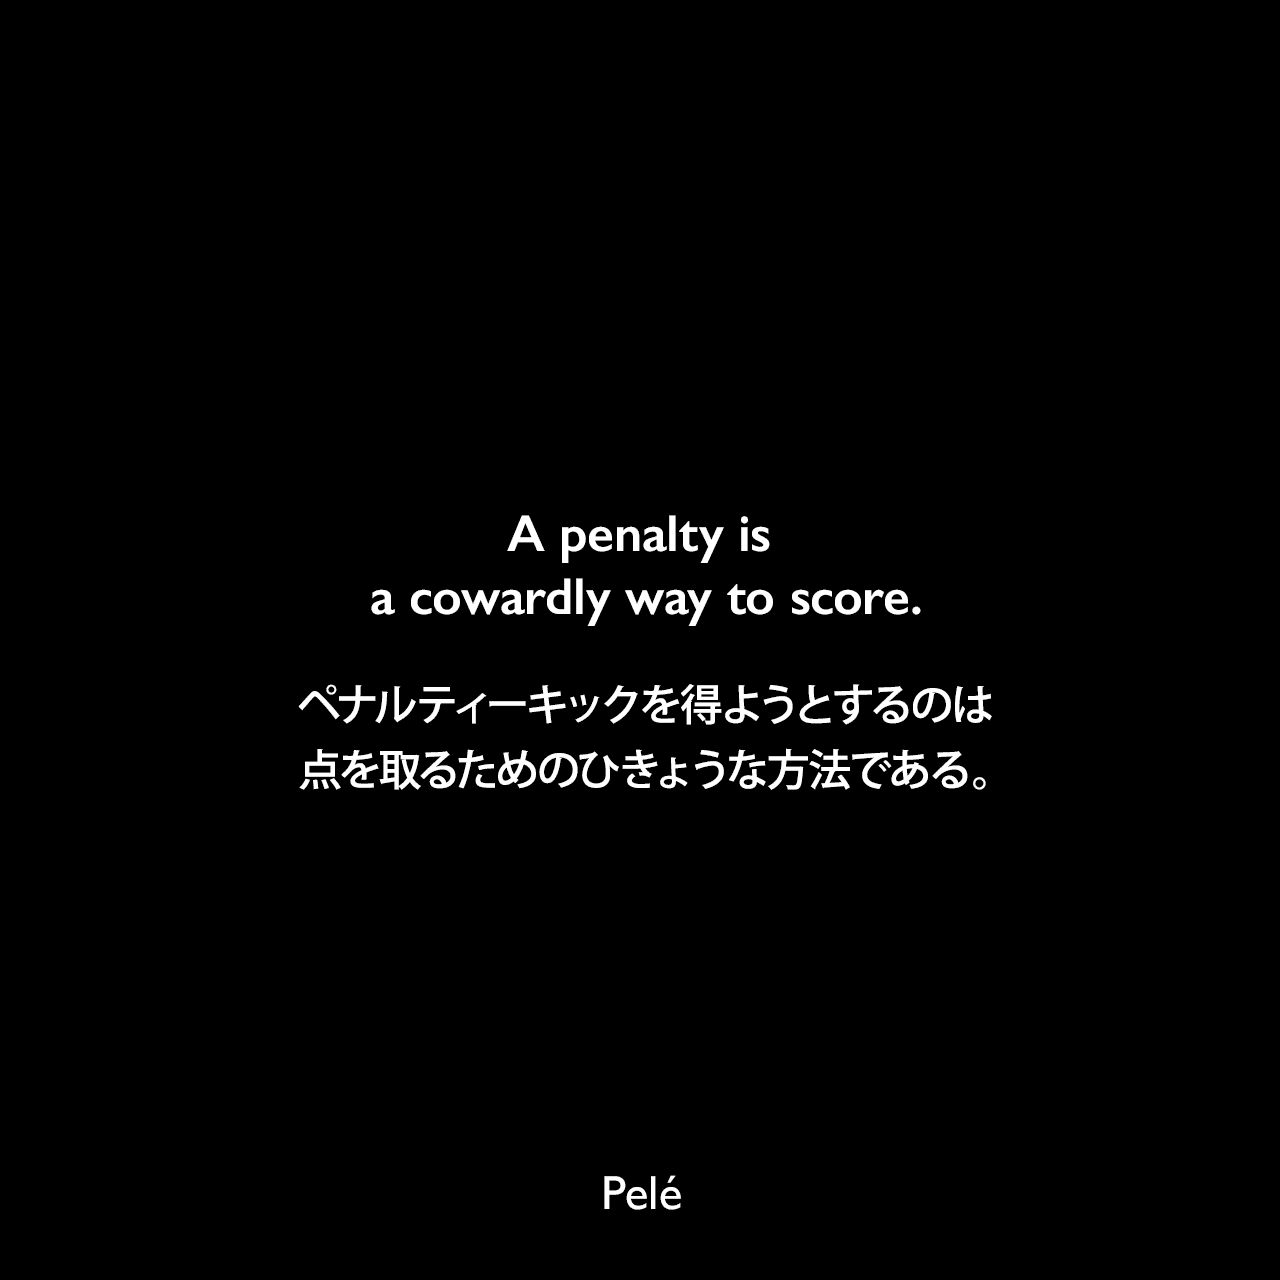 A penalty is a cowardly way to score.ペナルティーキックを得ようとするのは、点を取るためのひきょうな方法である。- ペレによる本「Pele: The Autobiography」よりPelé